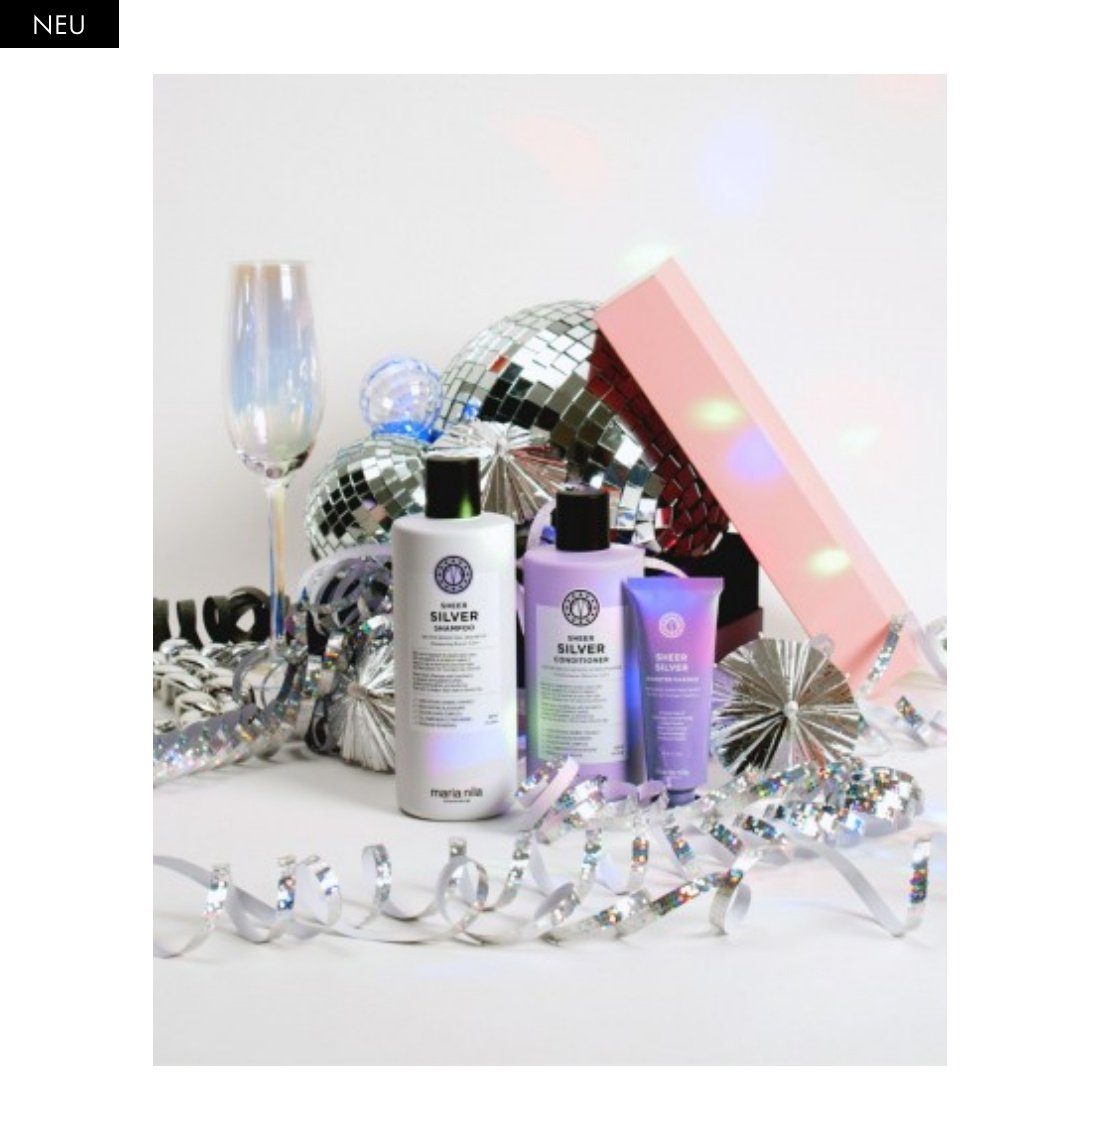 Glanz Geschenkset, Nila 3-tlg., Maske, Sheer NEU, Silver neutralisiert Maria + Shampoo Conditioner+ Gelbstiche, Booster HOLIDAY Haarpflege-Set BOX